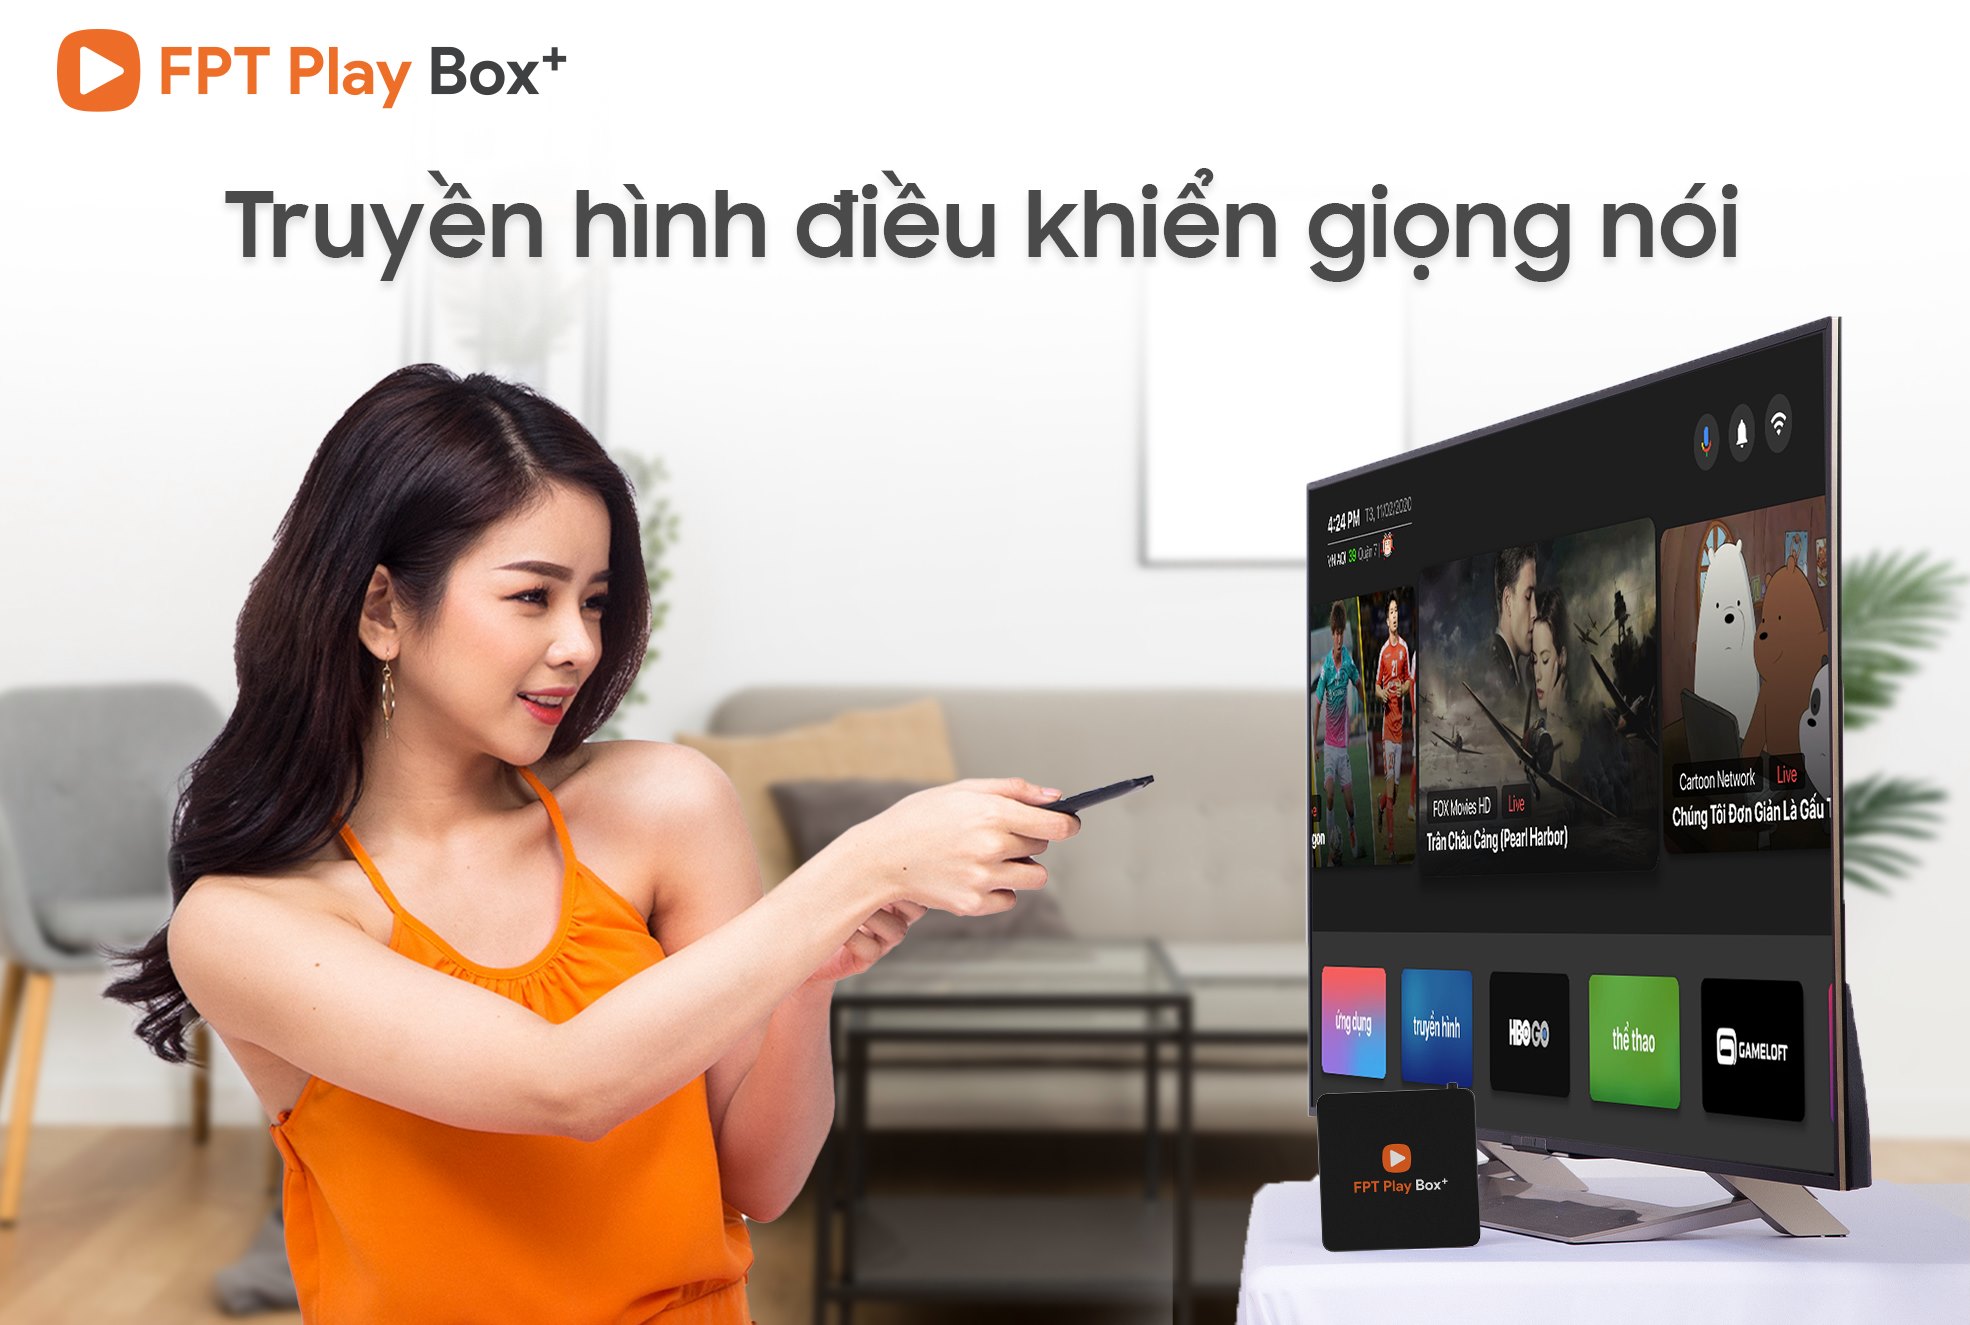 FPT Play Box 2020 là Box OTT sử dụng hệ điều hành độc quyền Adroid TV 10 của Google.